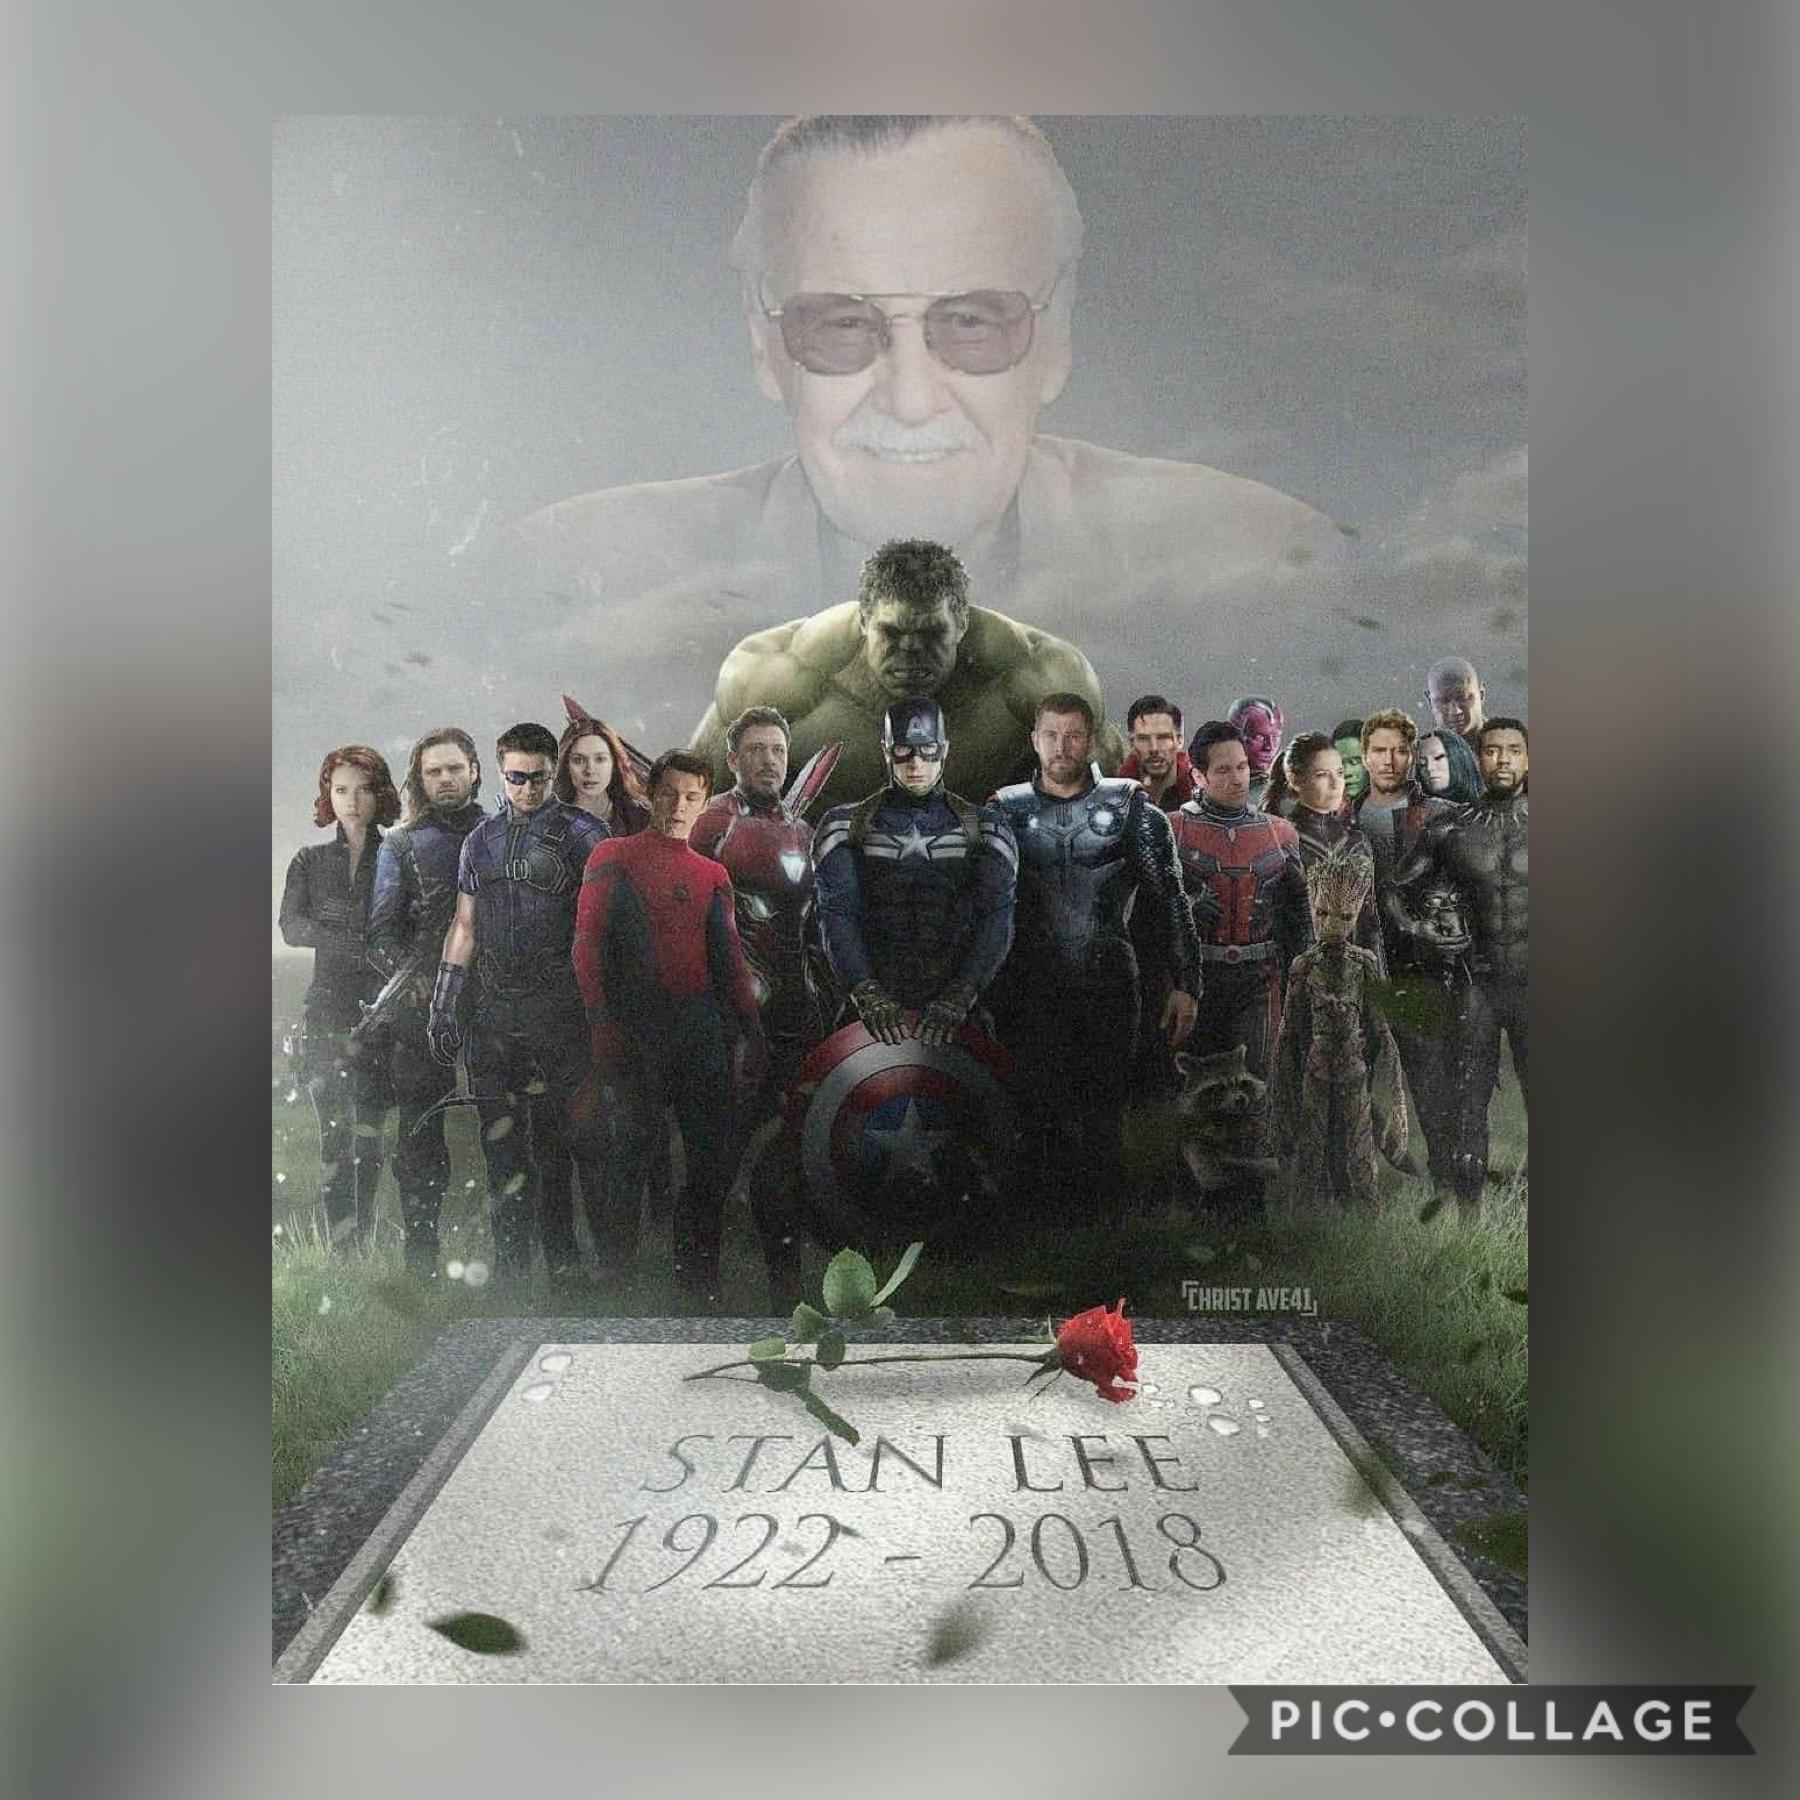 We miss you Stan Lee